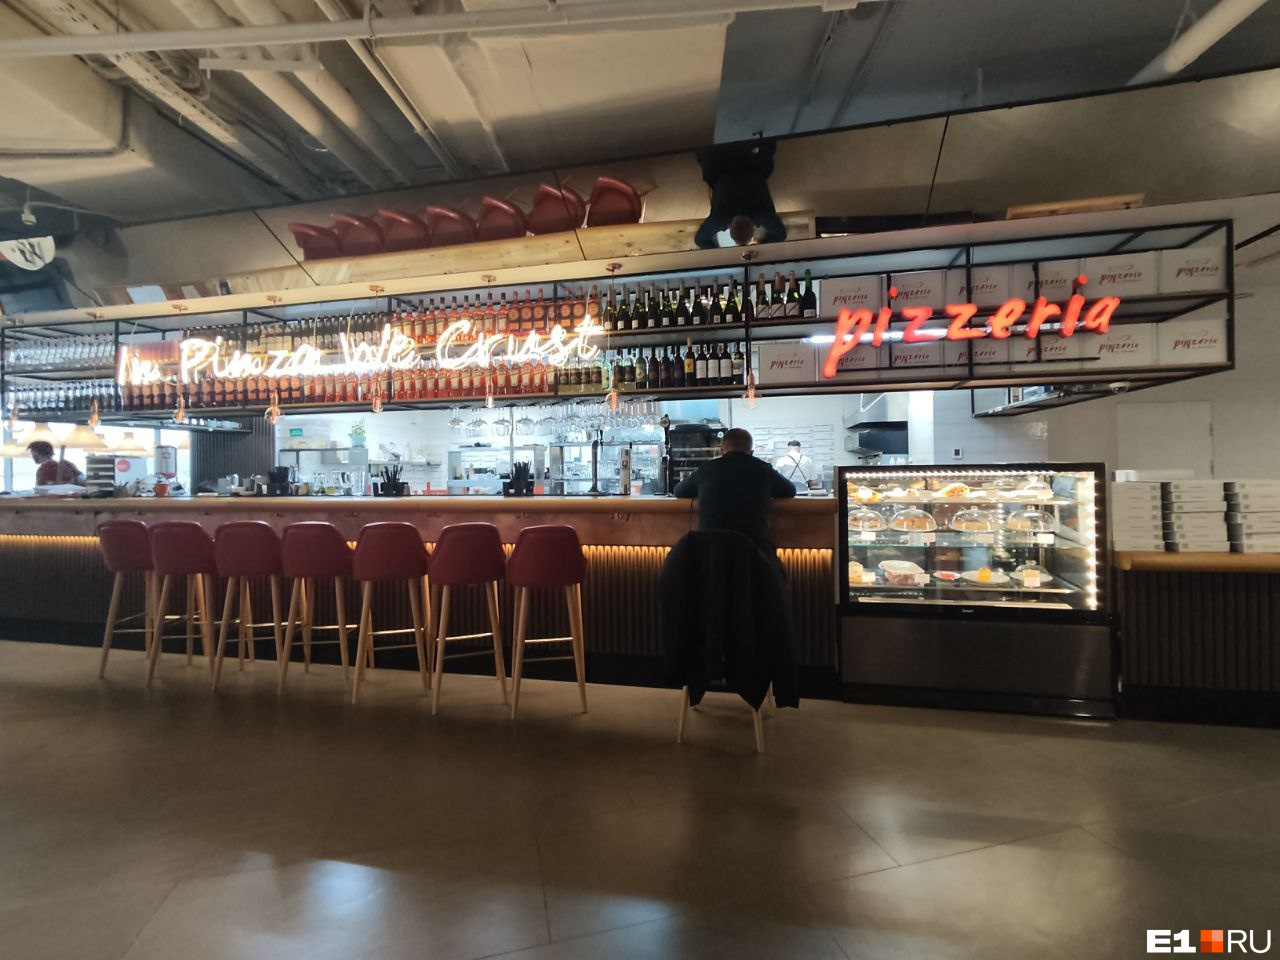 Пинцерия превратится в пиццерию после отказа от франшизы. Обновленный ресторан в «Синара-центре» откроется в январе 2023 года